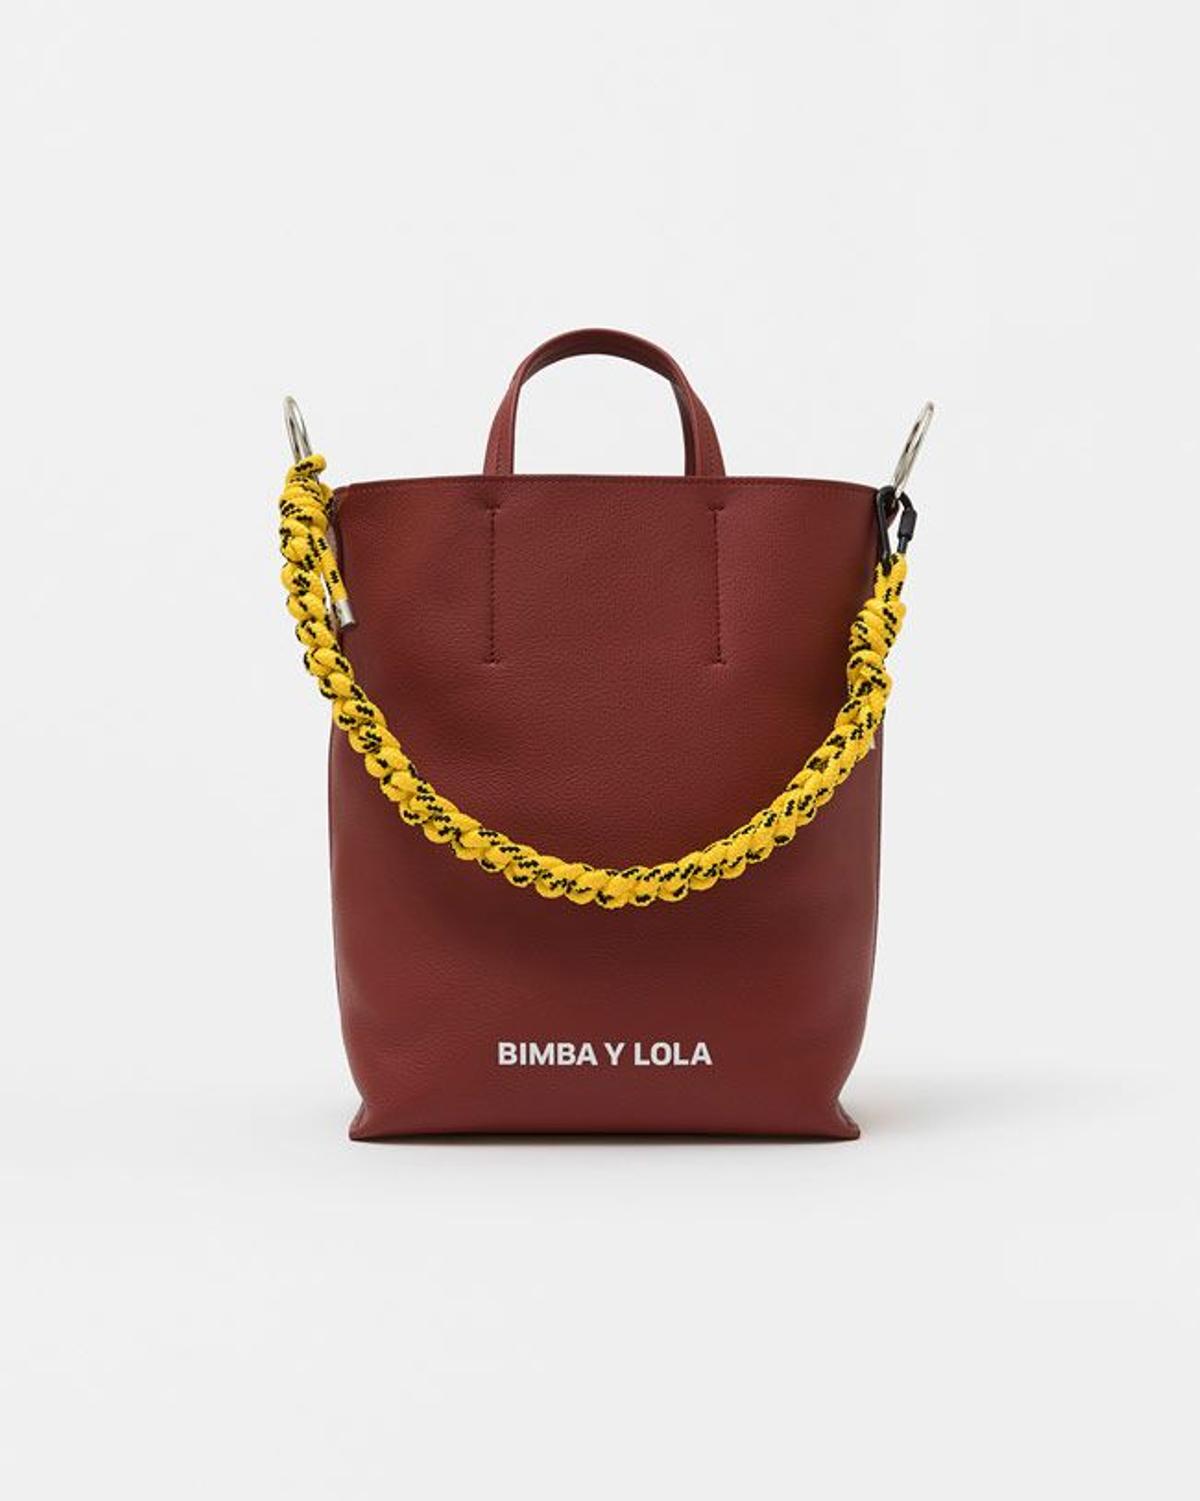 Los siete bolsos de Bimba y Lola que nunca pasan de moda y son el mejor  fondo de armario